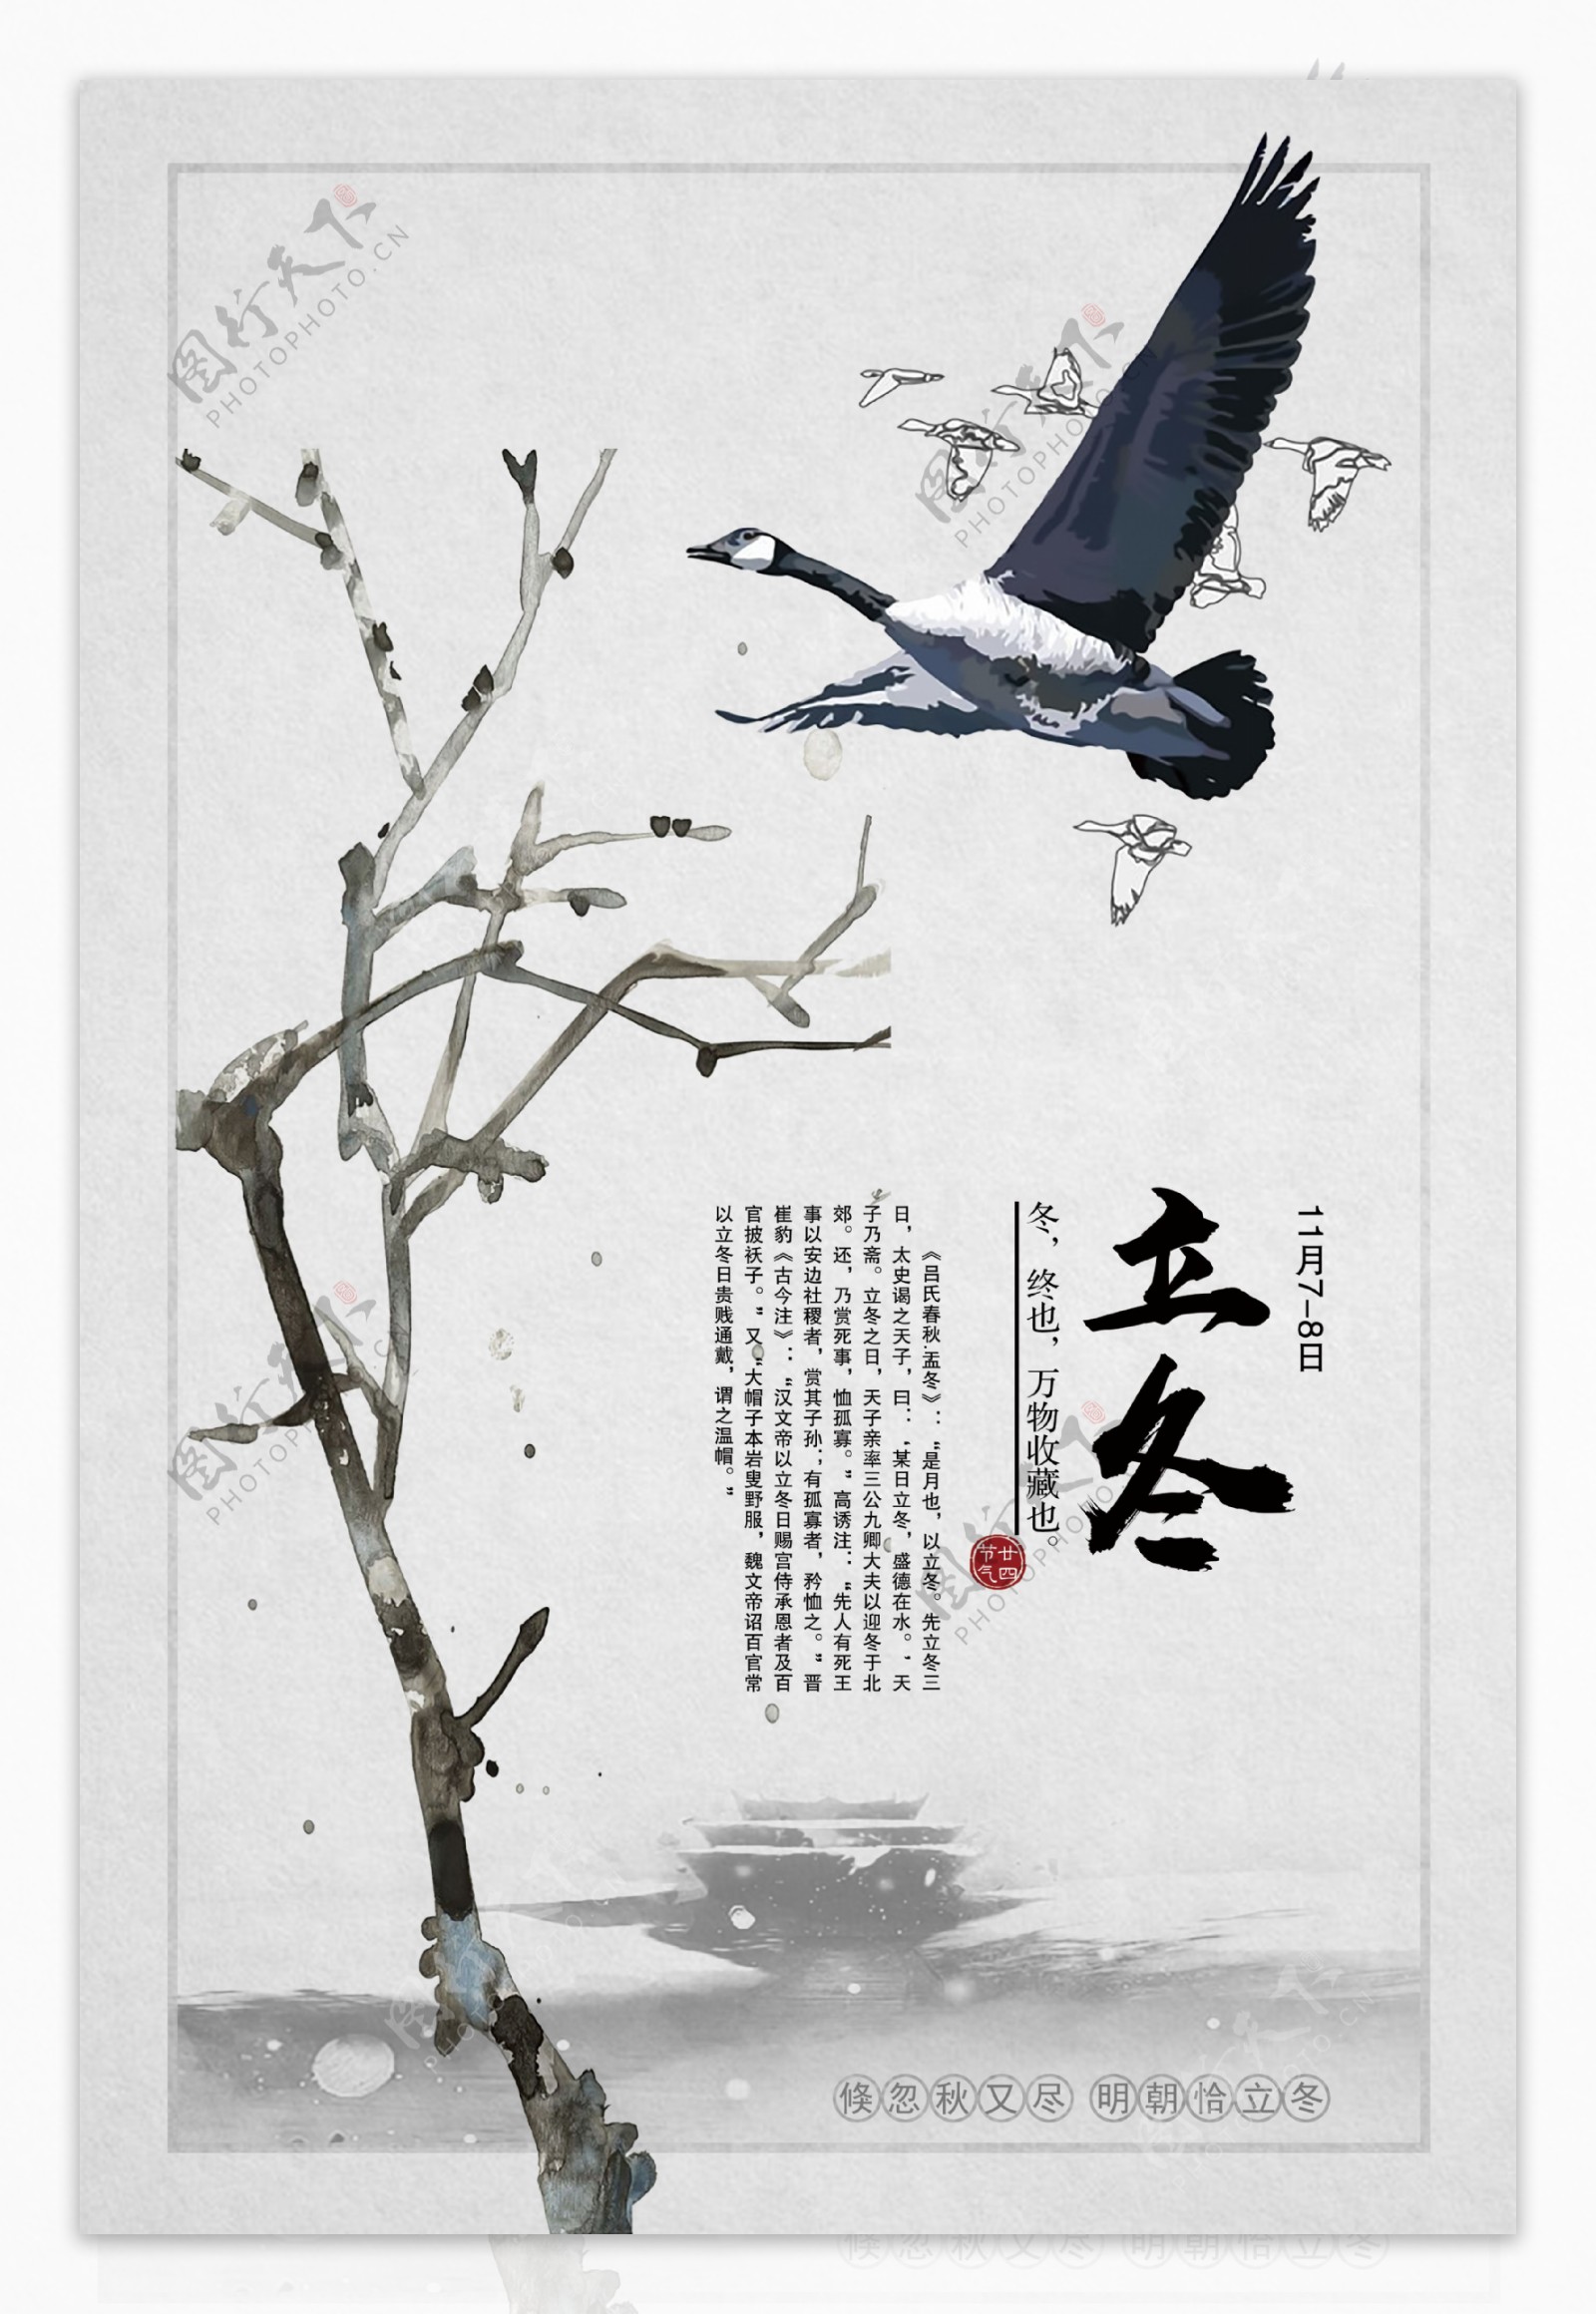 中国风立冬节气宣传海报